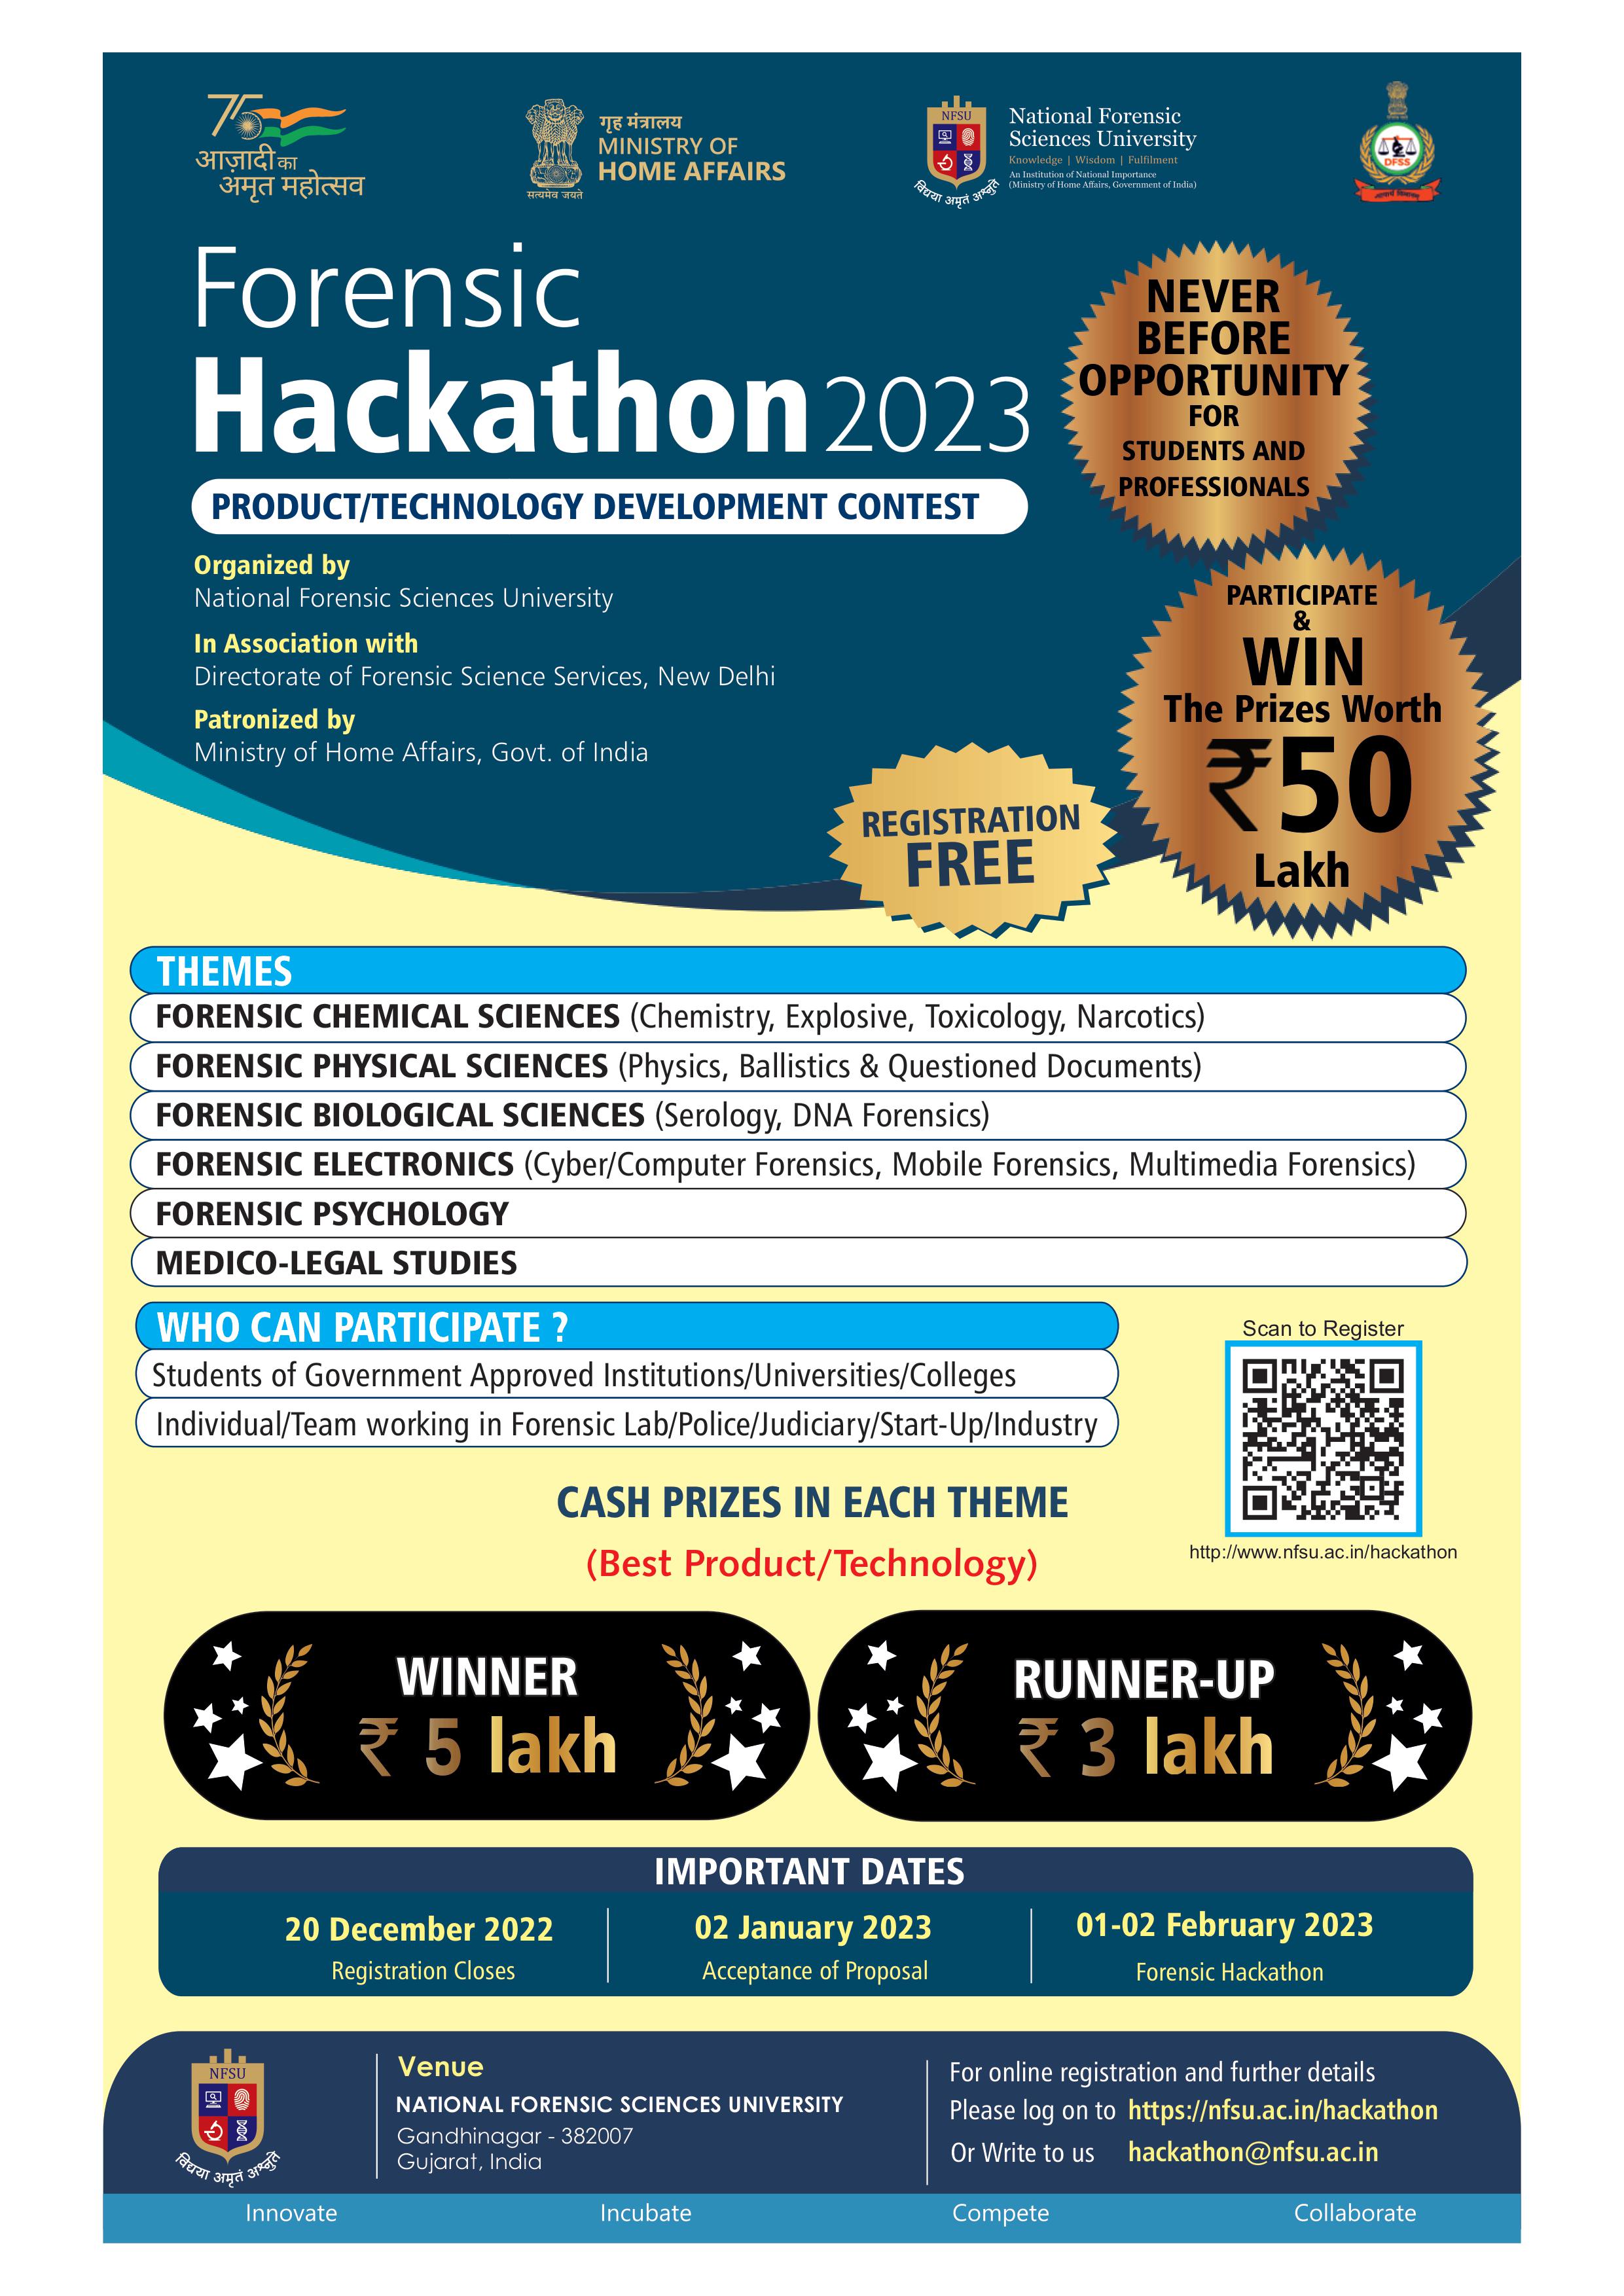 Forensic Hackathon 2023, Gandhinagar, Gujarat, India